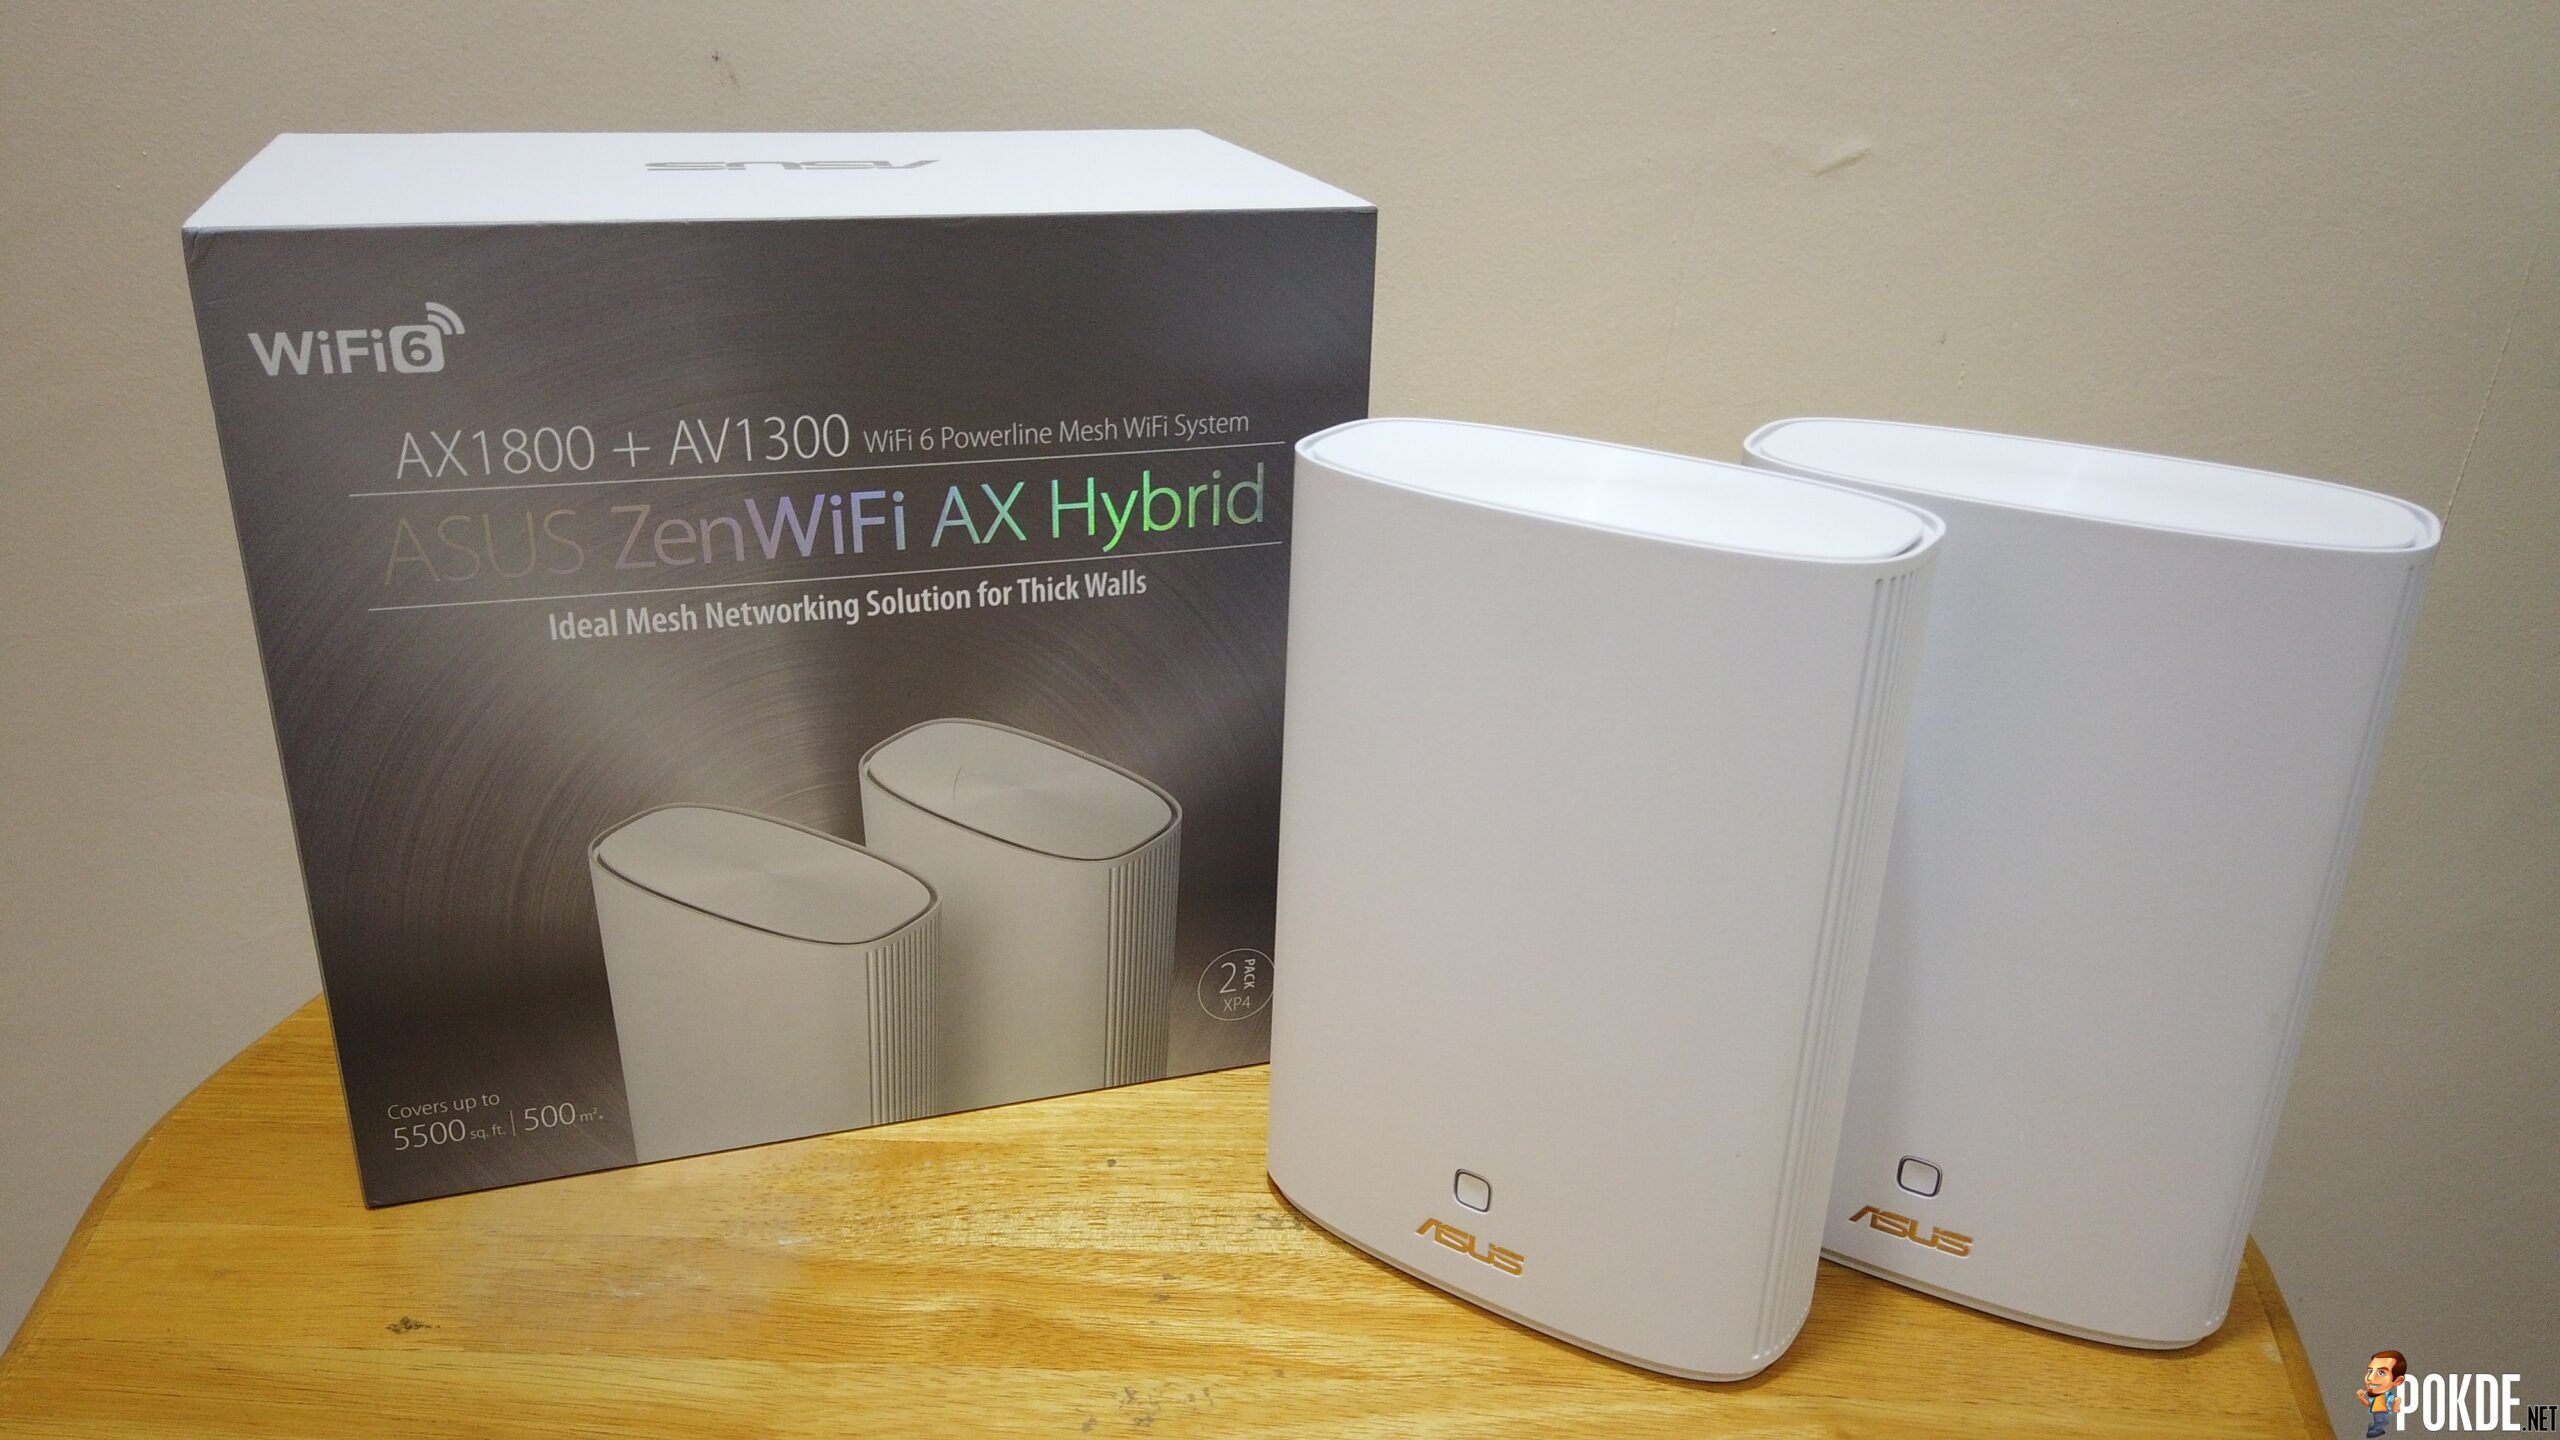 ASUS ZenWiFi AX Hybrid (XP4) Mesh Review - 5,500 sqft Wi-Fi Coverage 22